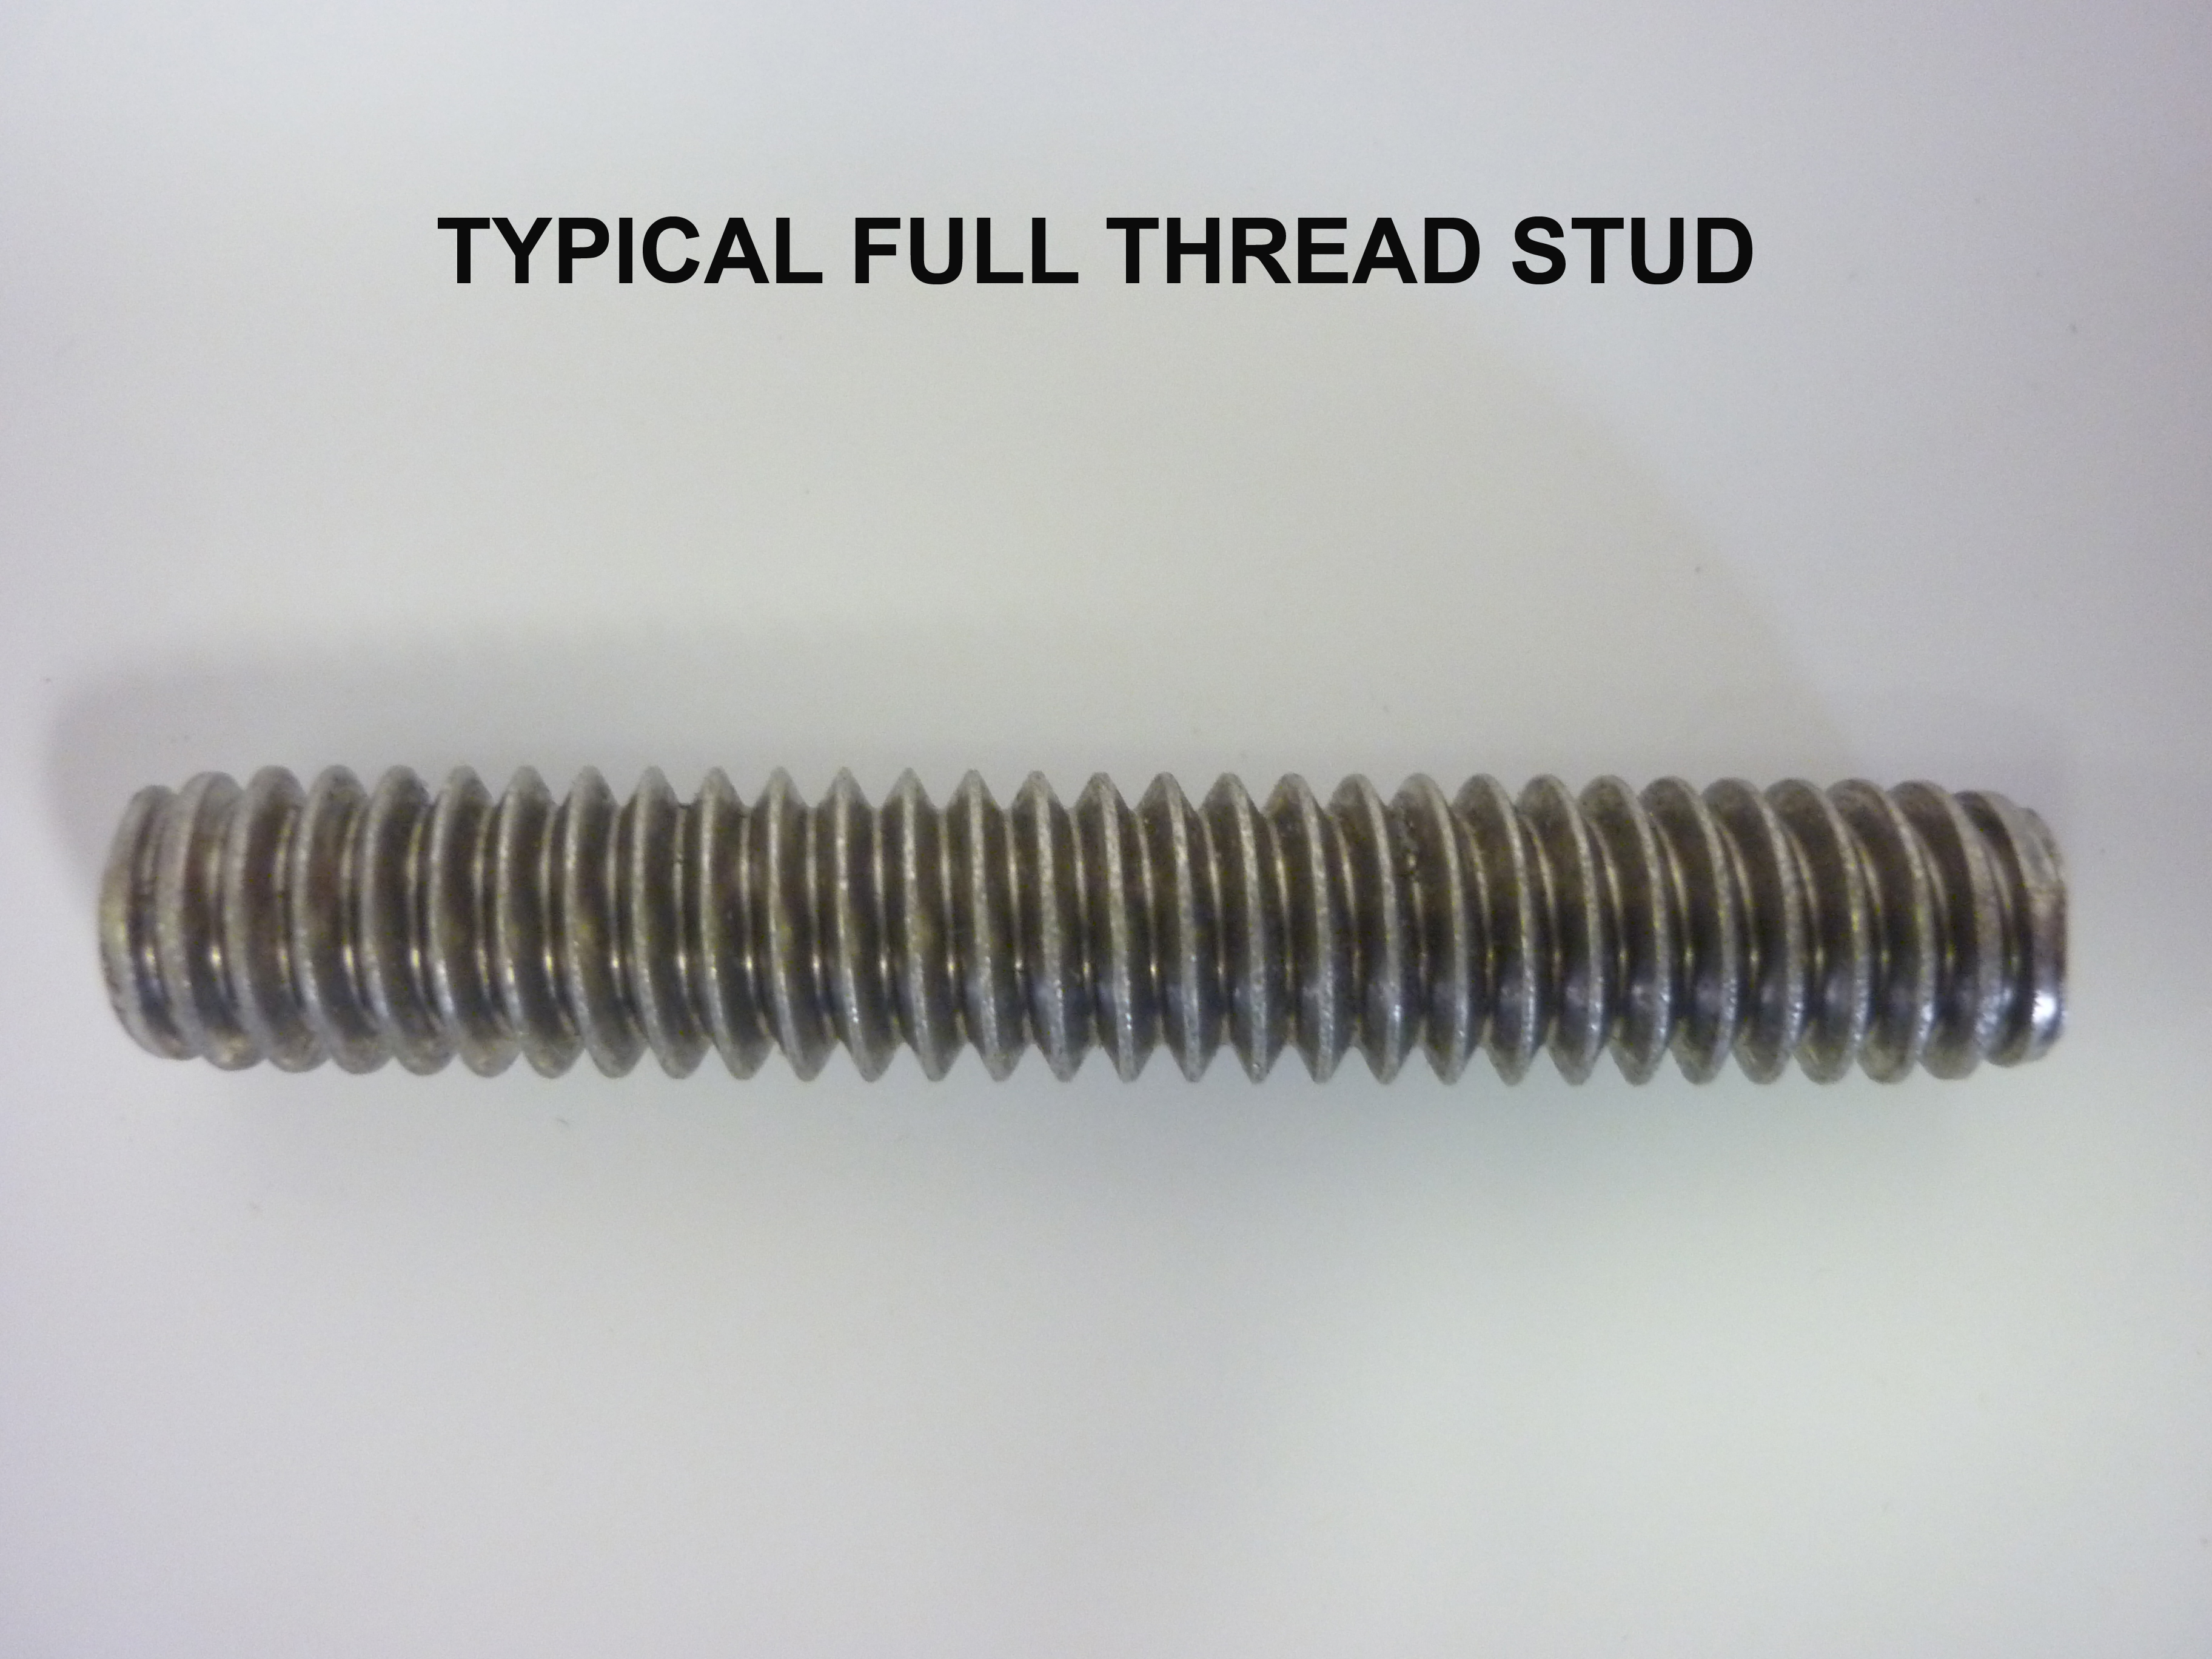 Full Thread Stud